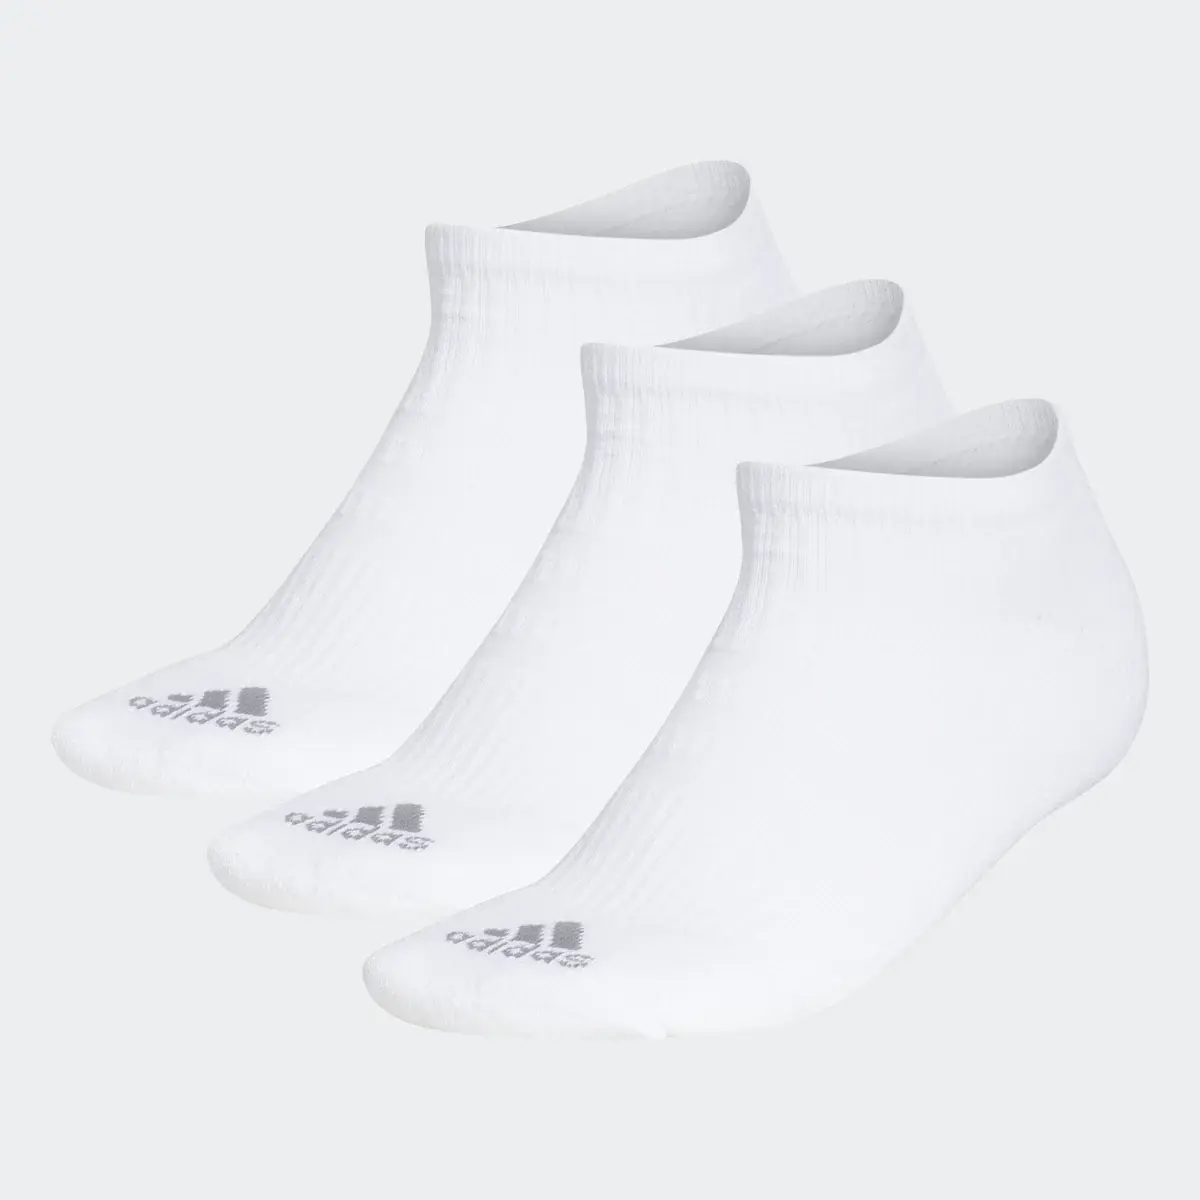 Adidas Meias de Cano Baixo Comfort — 3 pares. 2